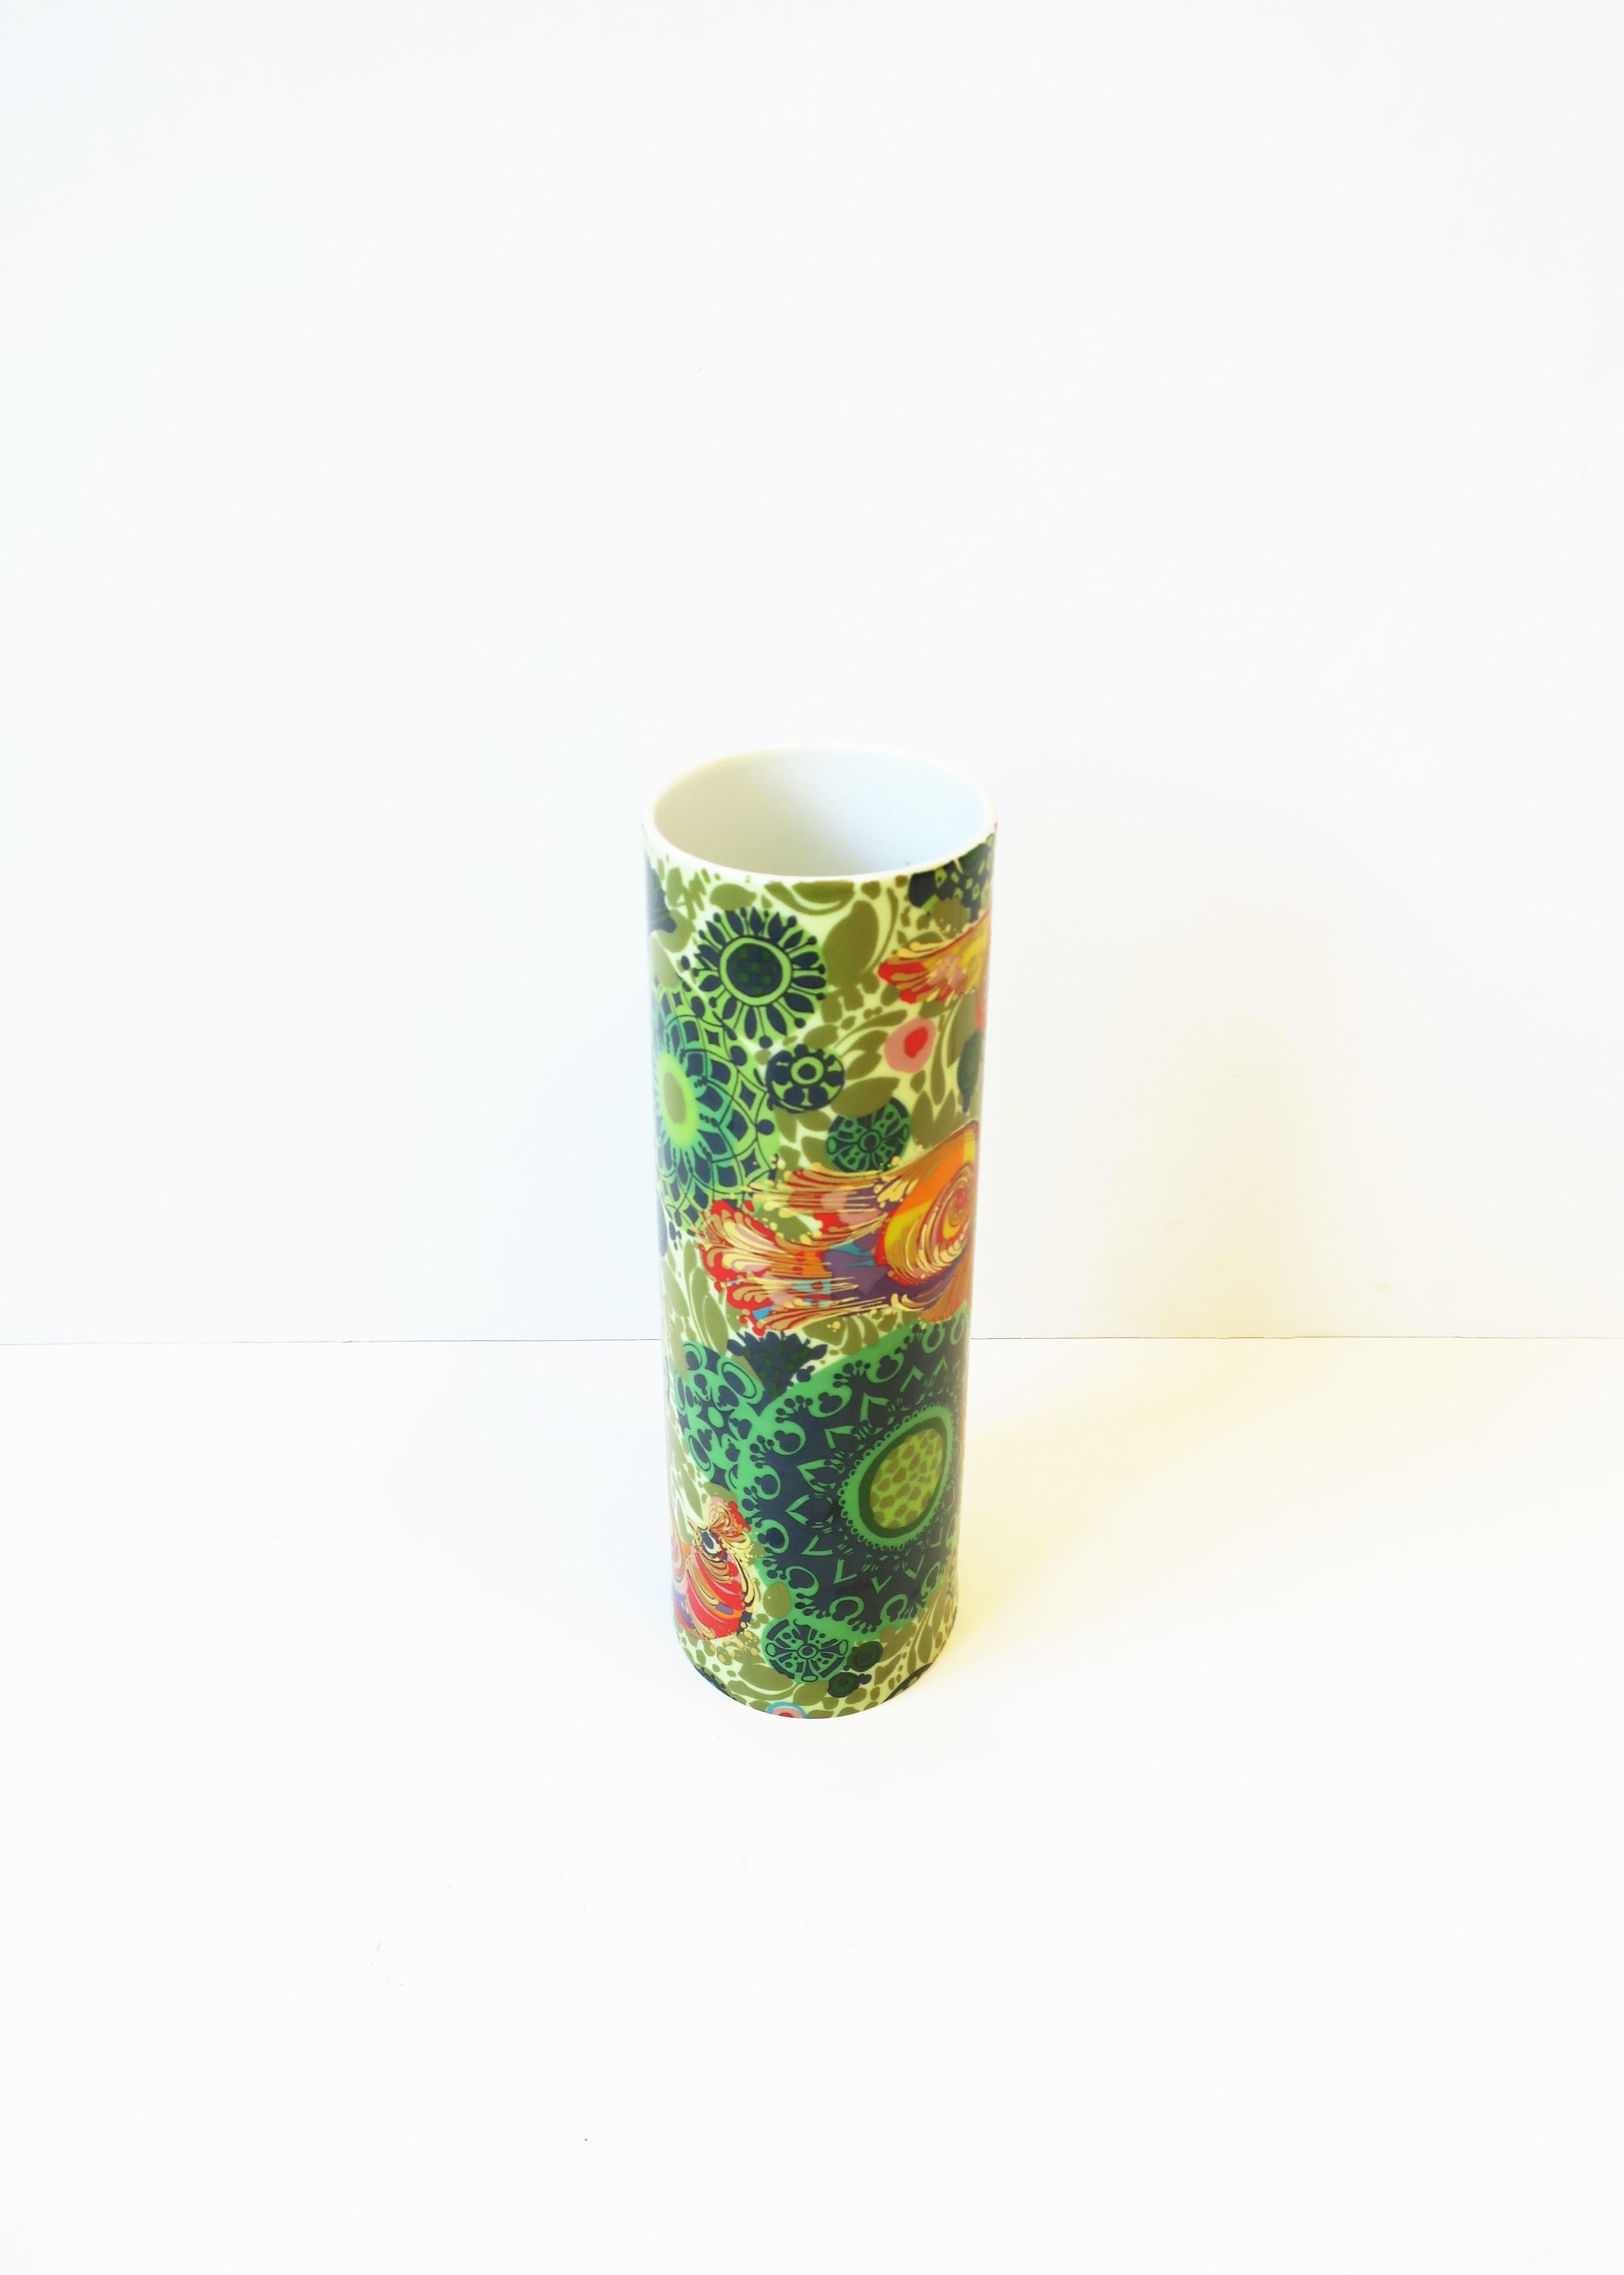 Rosenthal Studio-Line Vase by Danish Designer Bjorn Wiinblad with Bird Design 1